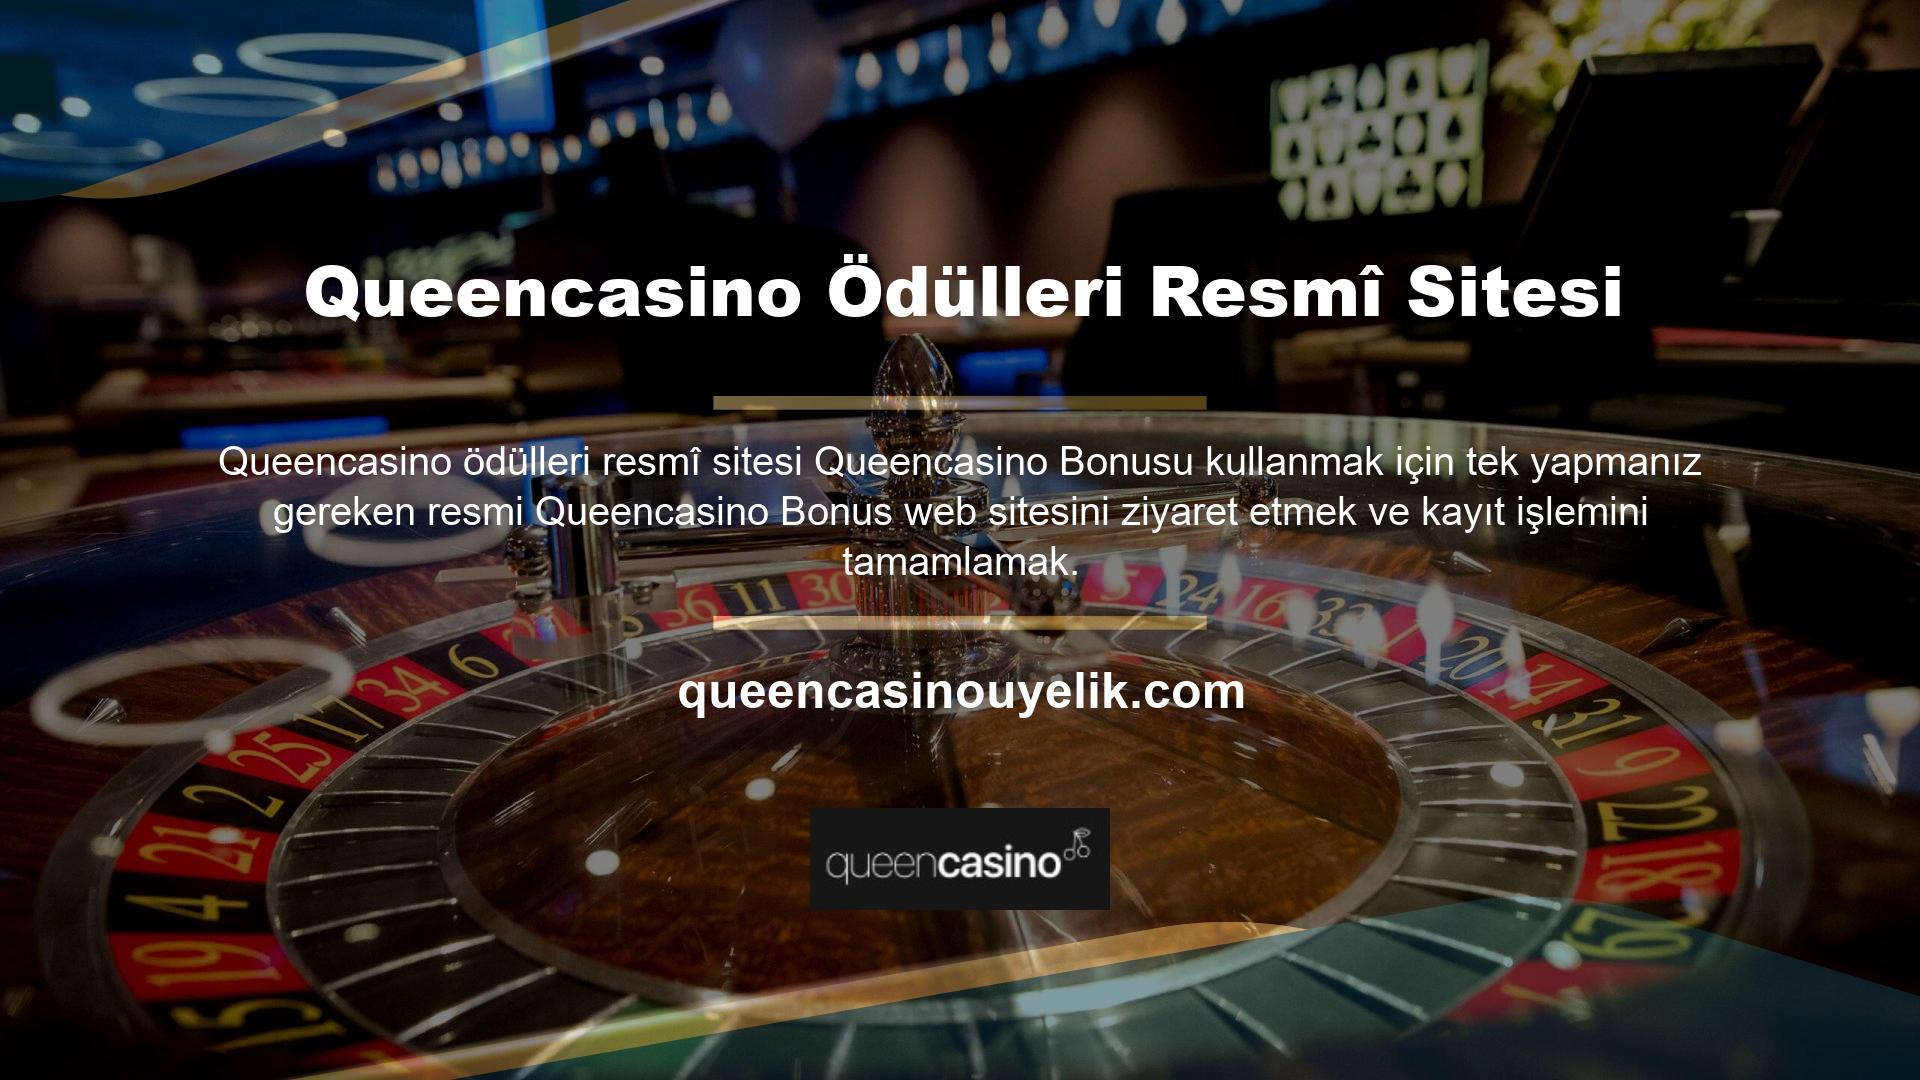 Queencasino kaydolduysanız, Queencasino katıldıktan sonra oyuna katılabilir ve bonustan yararlanabilirsiniz